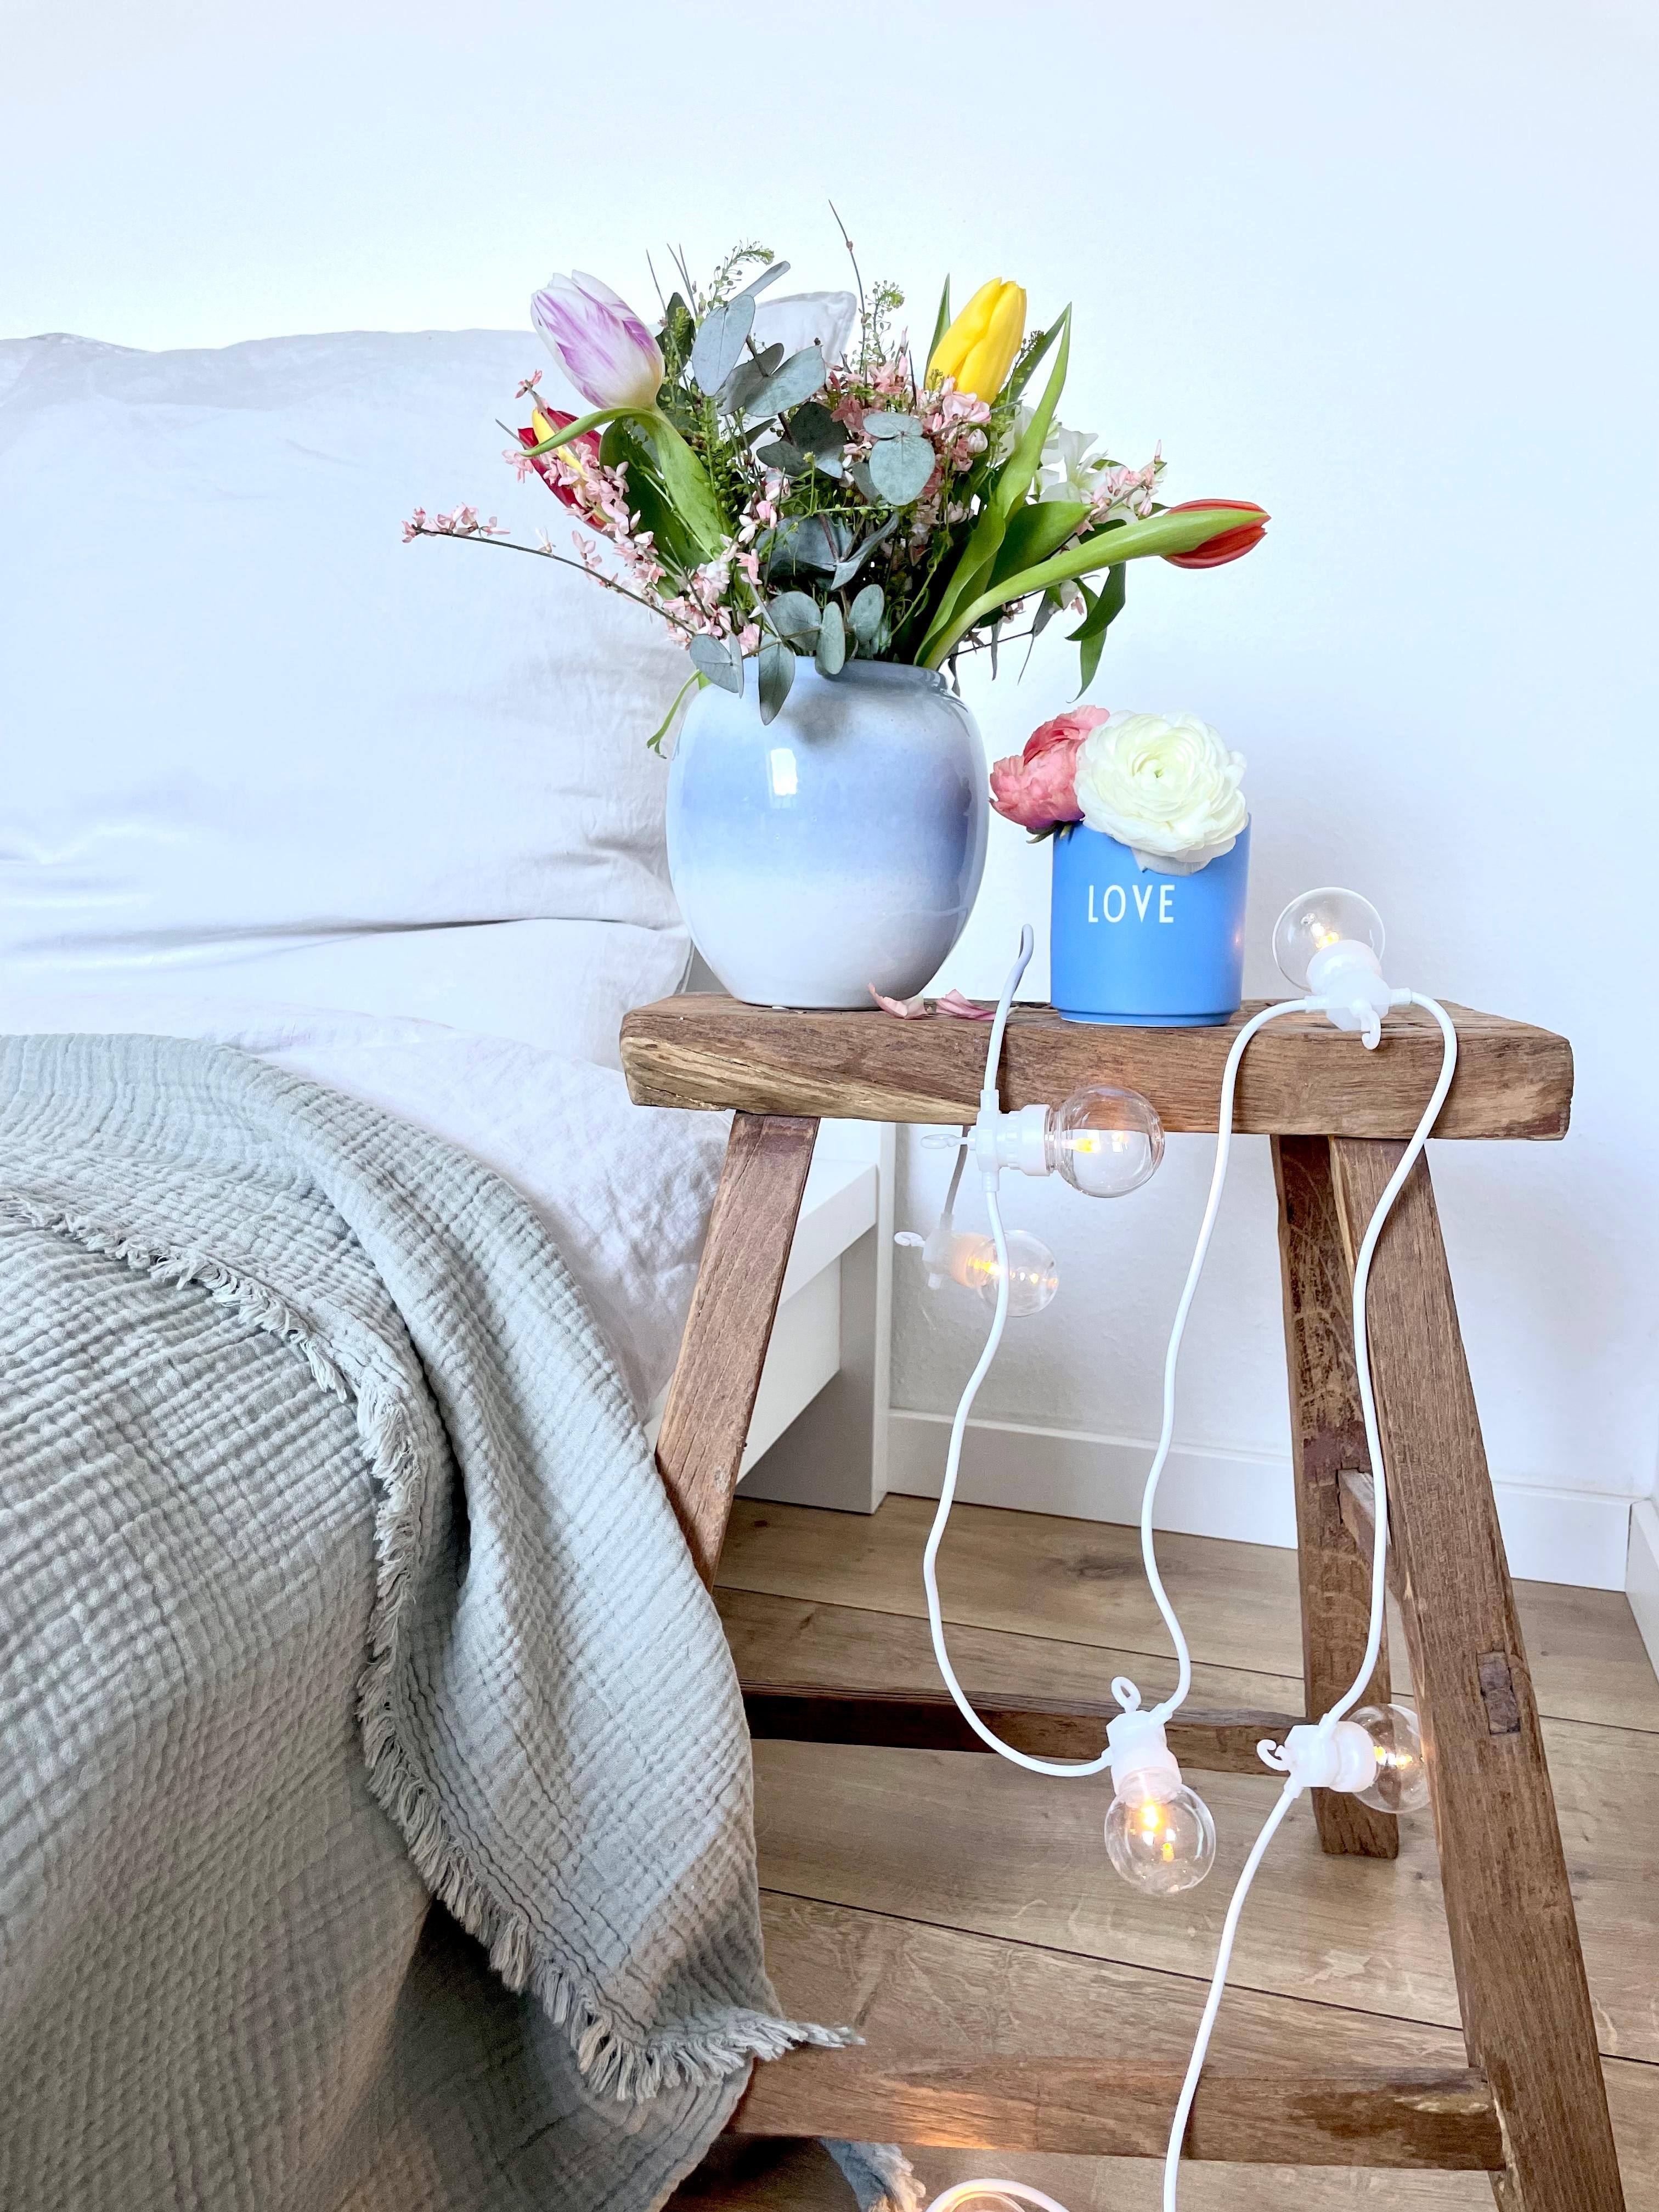 #schlafzimmer #wohnidee #bedroom #dekoidee #hygge #cozy #living #couchstyle#blumen #blumenliebe #vase#vasenliebe#flower